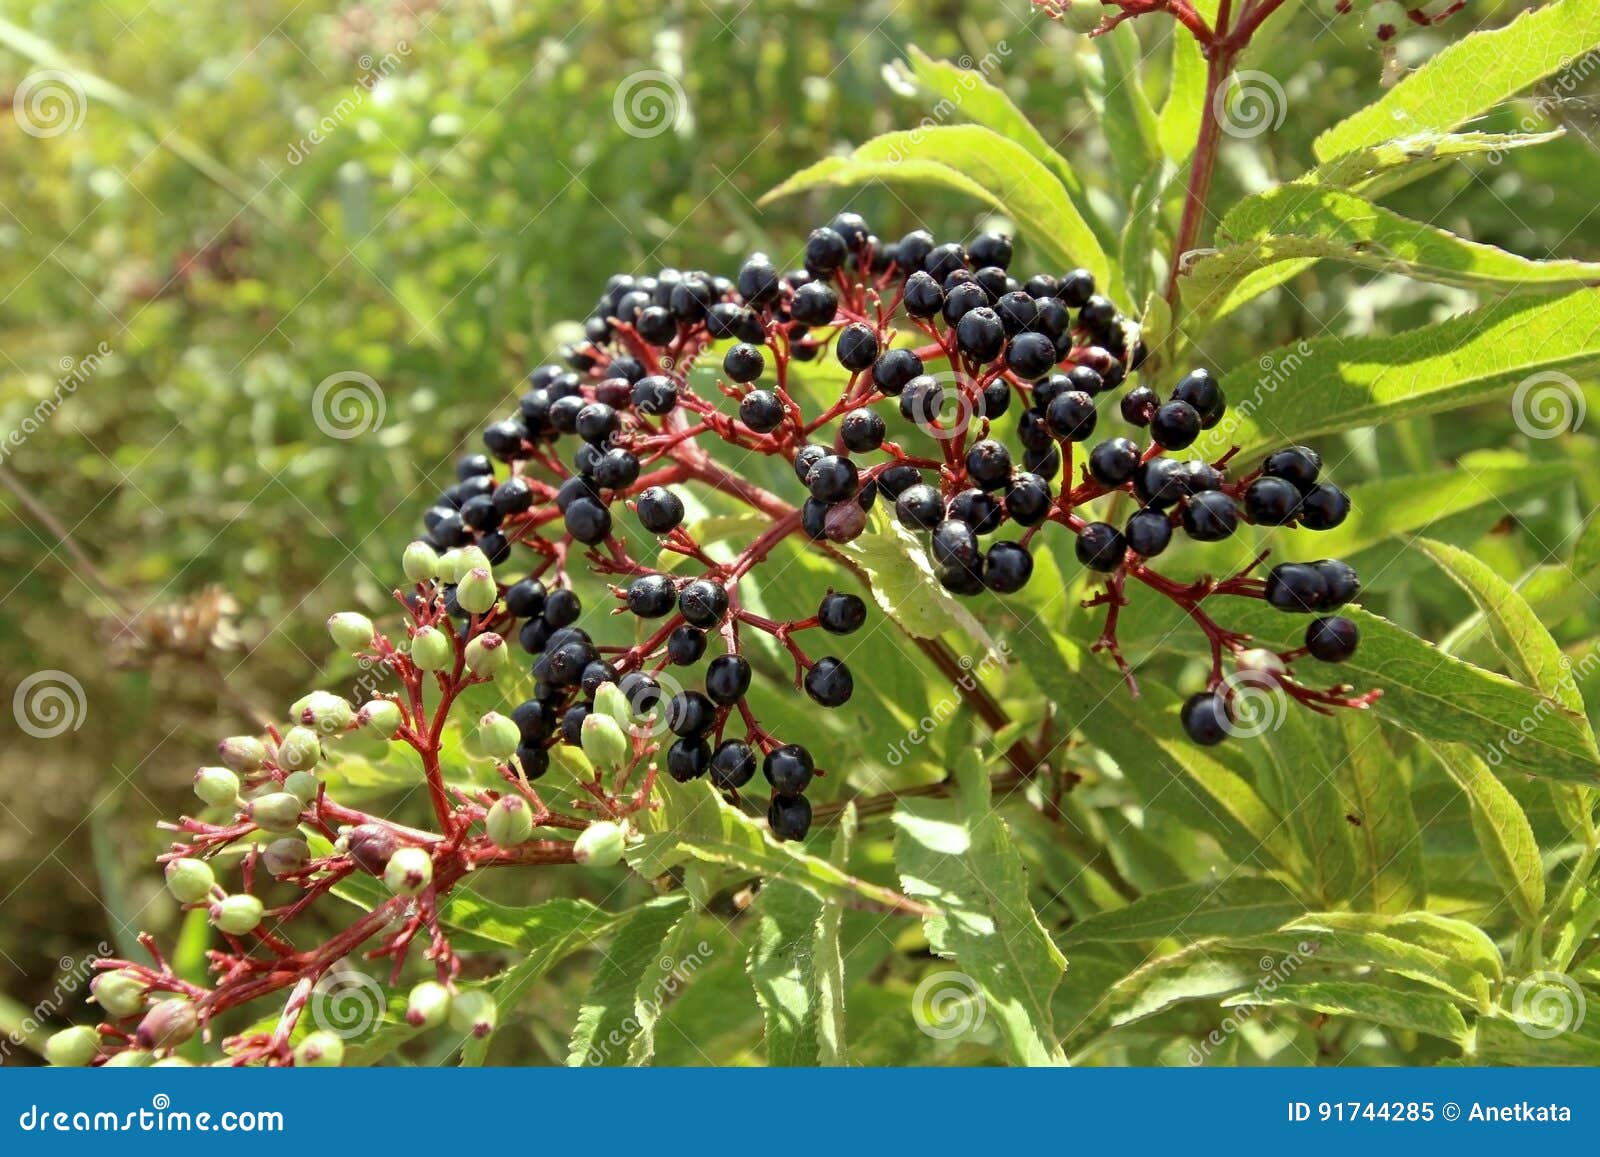 sambucus nigra fruits